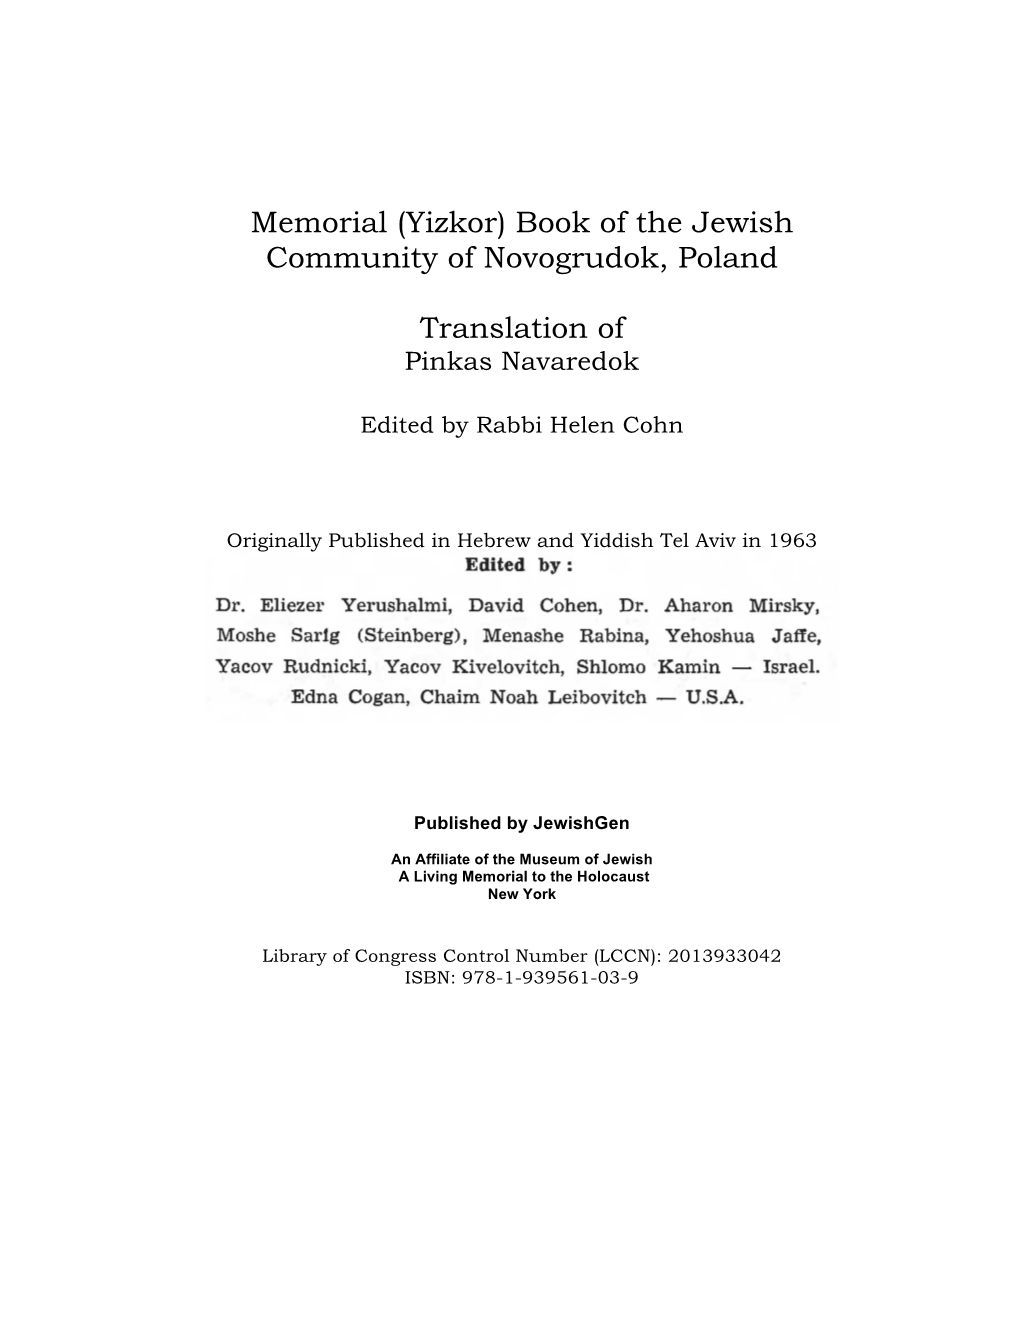 Yizkor) Book of the Jewish Community of Novogrudok, Poland